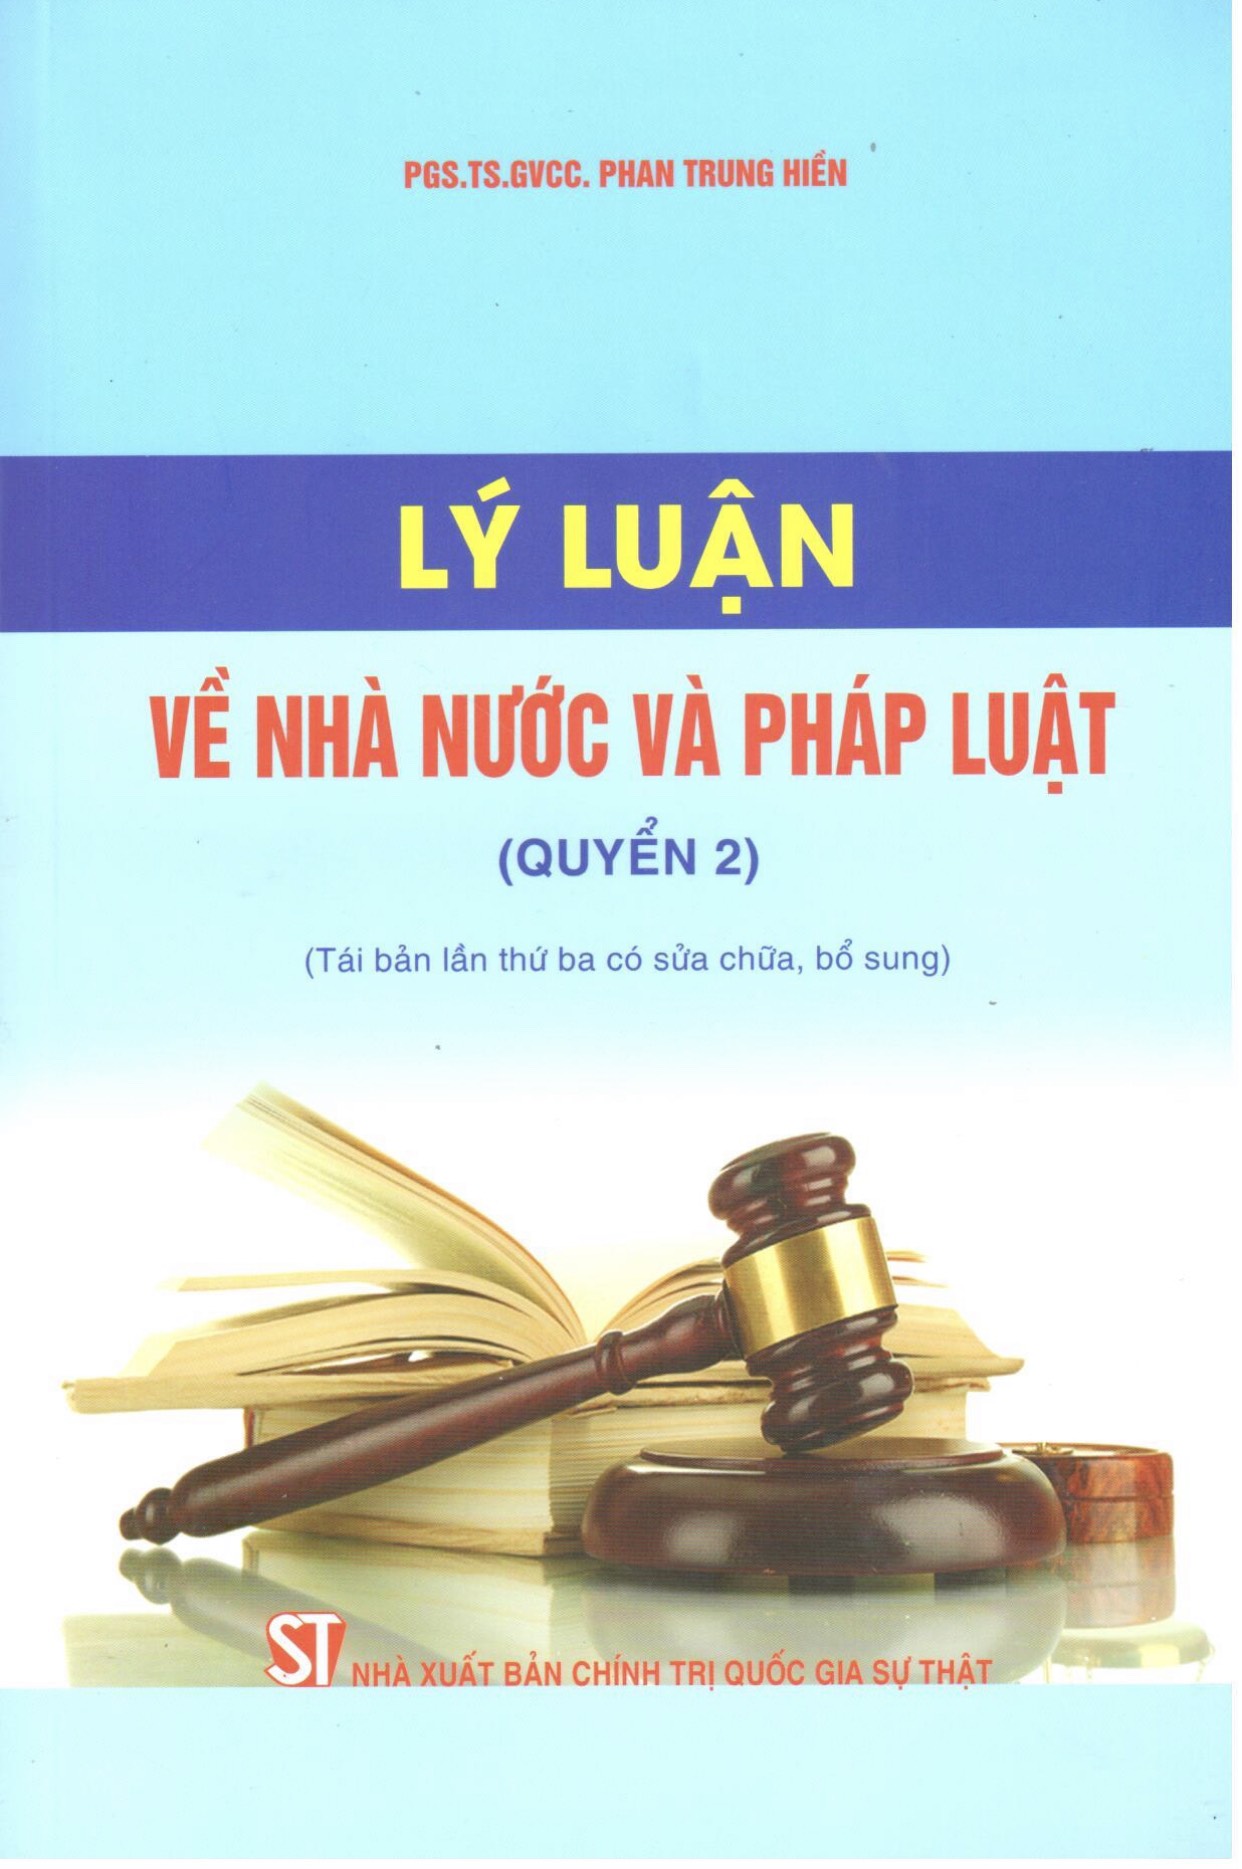 Lý luận về nhà nước và pháp luật (Quyển 2) (Tái bản lần thứ ba có sửa chữa, bổ sung)